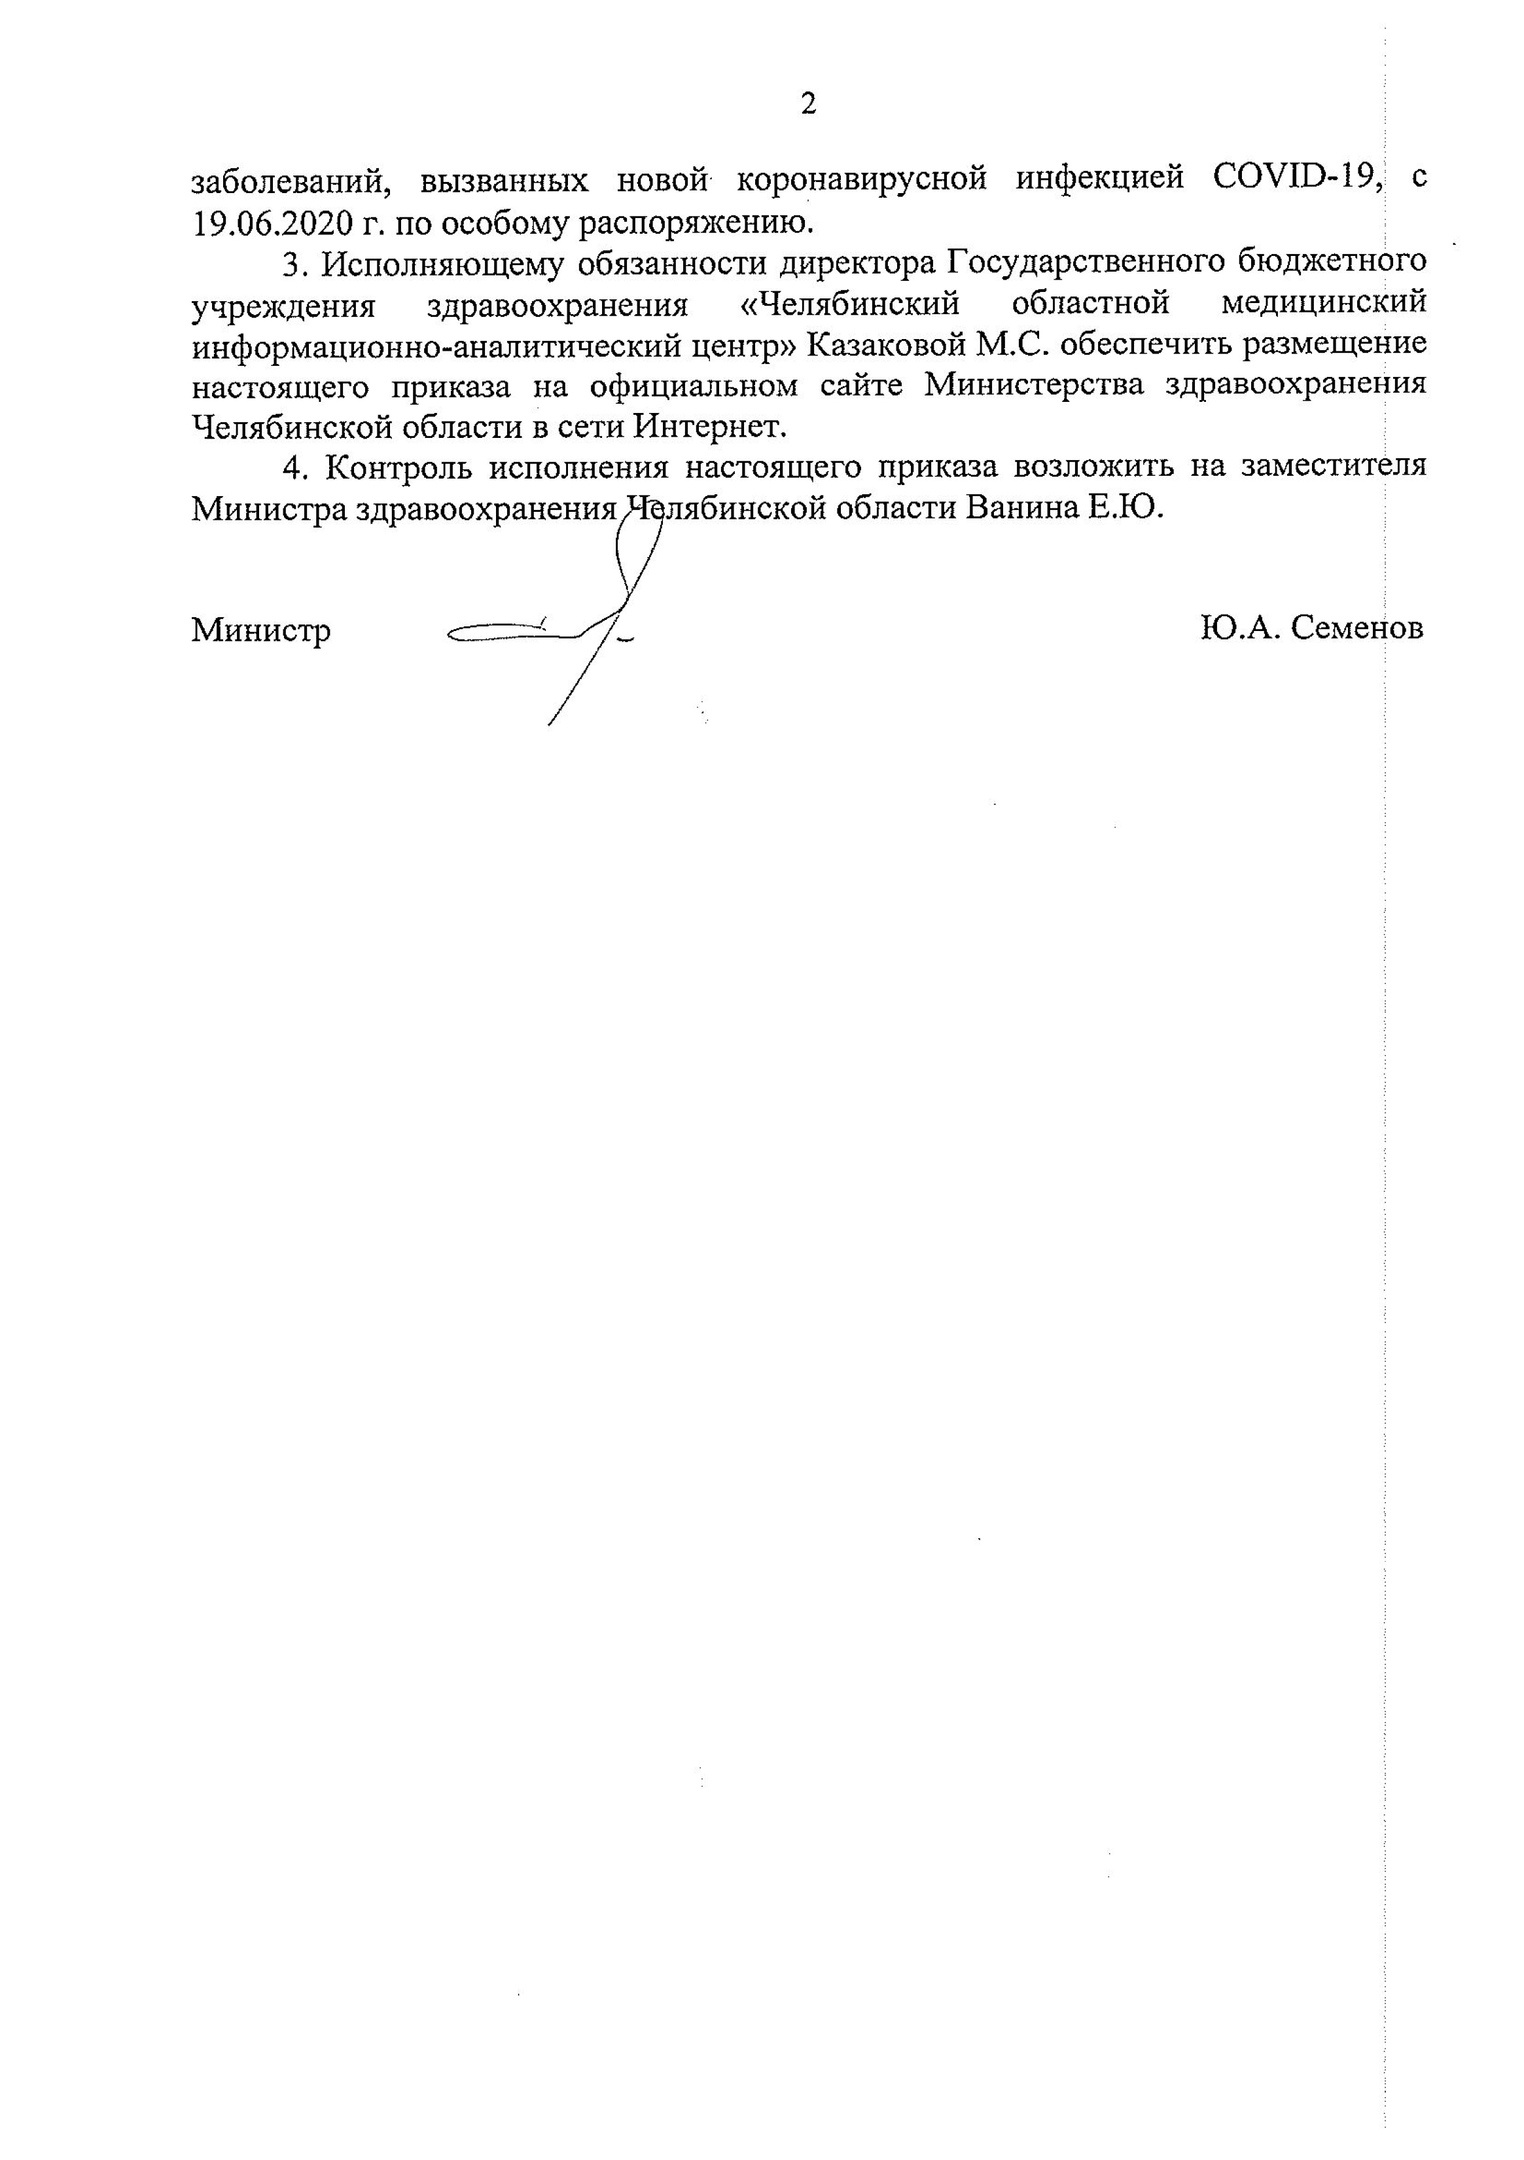 Контроль исполнения приказа возложен на замминистра здравоохранения Челябинской области Евгения Ванина